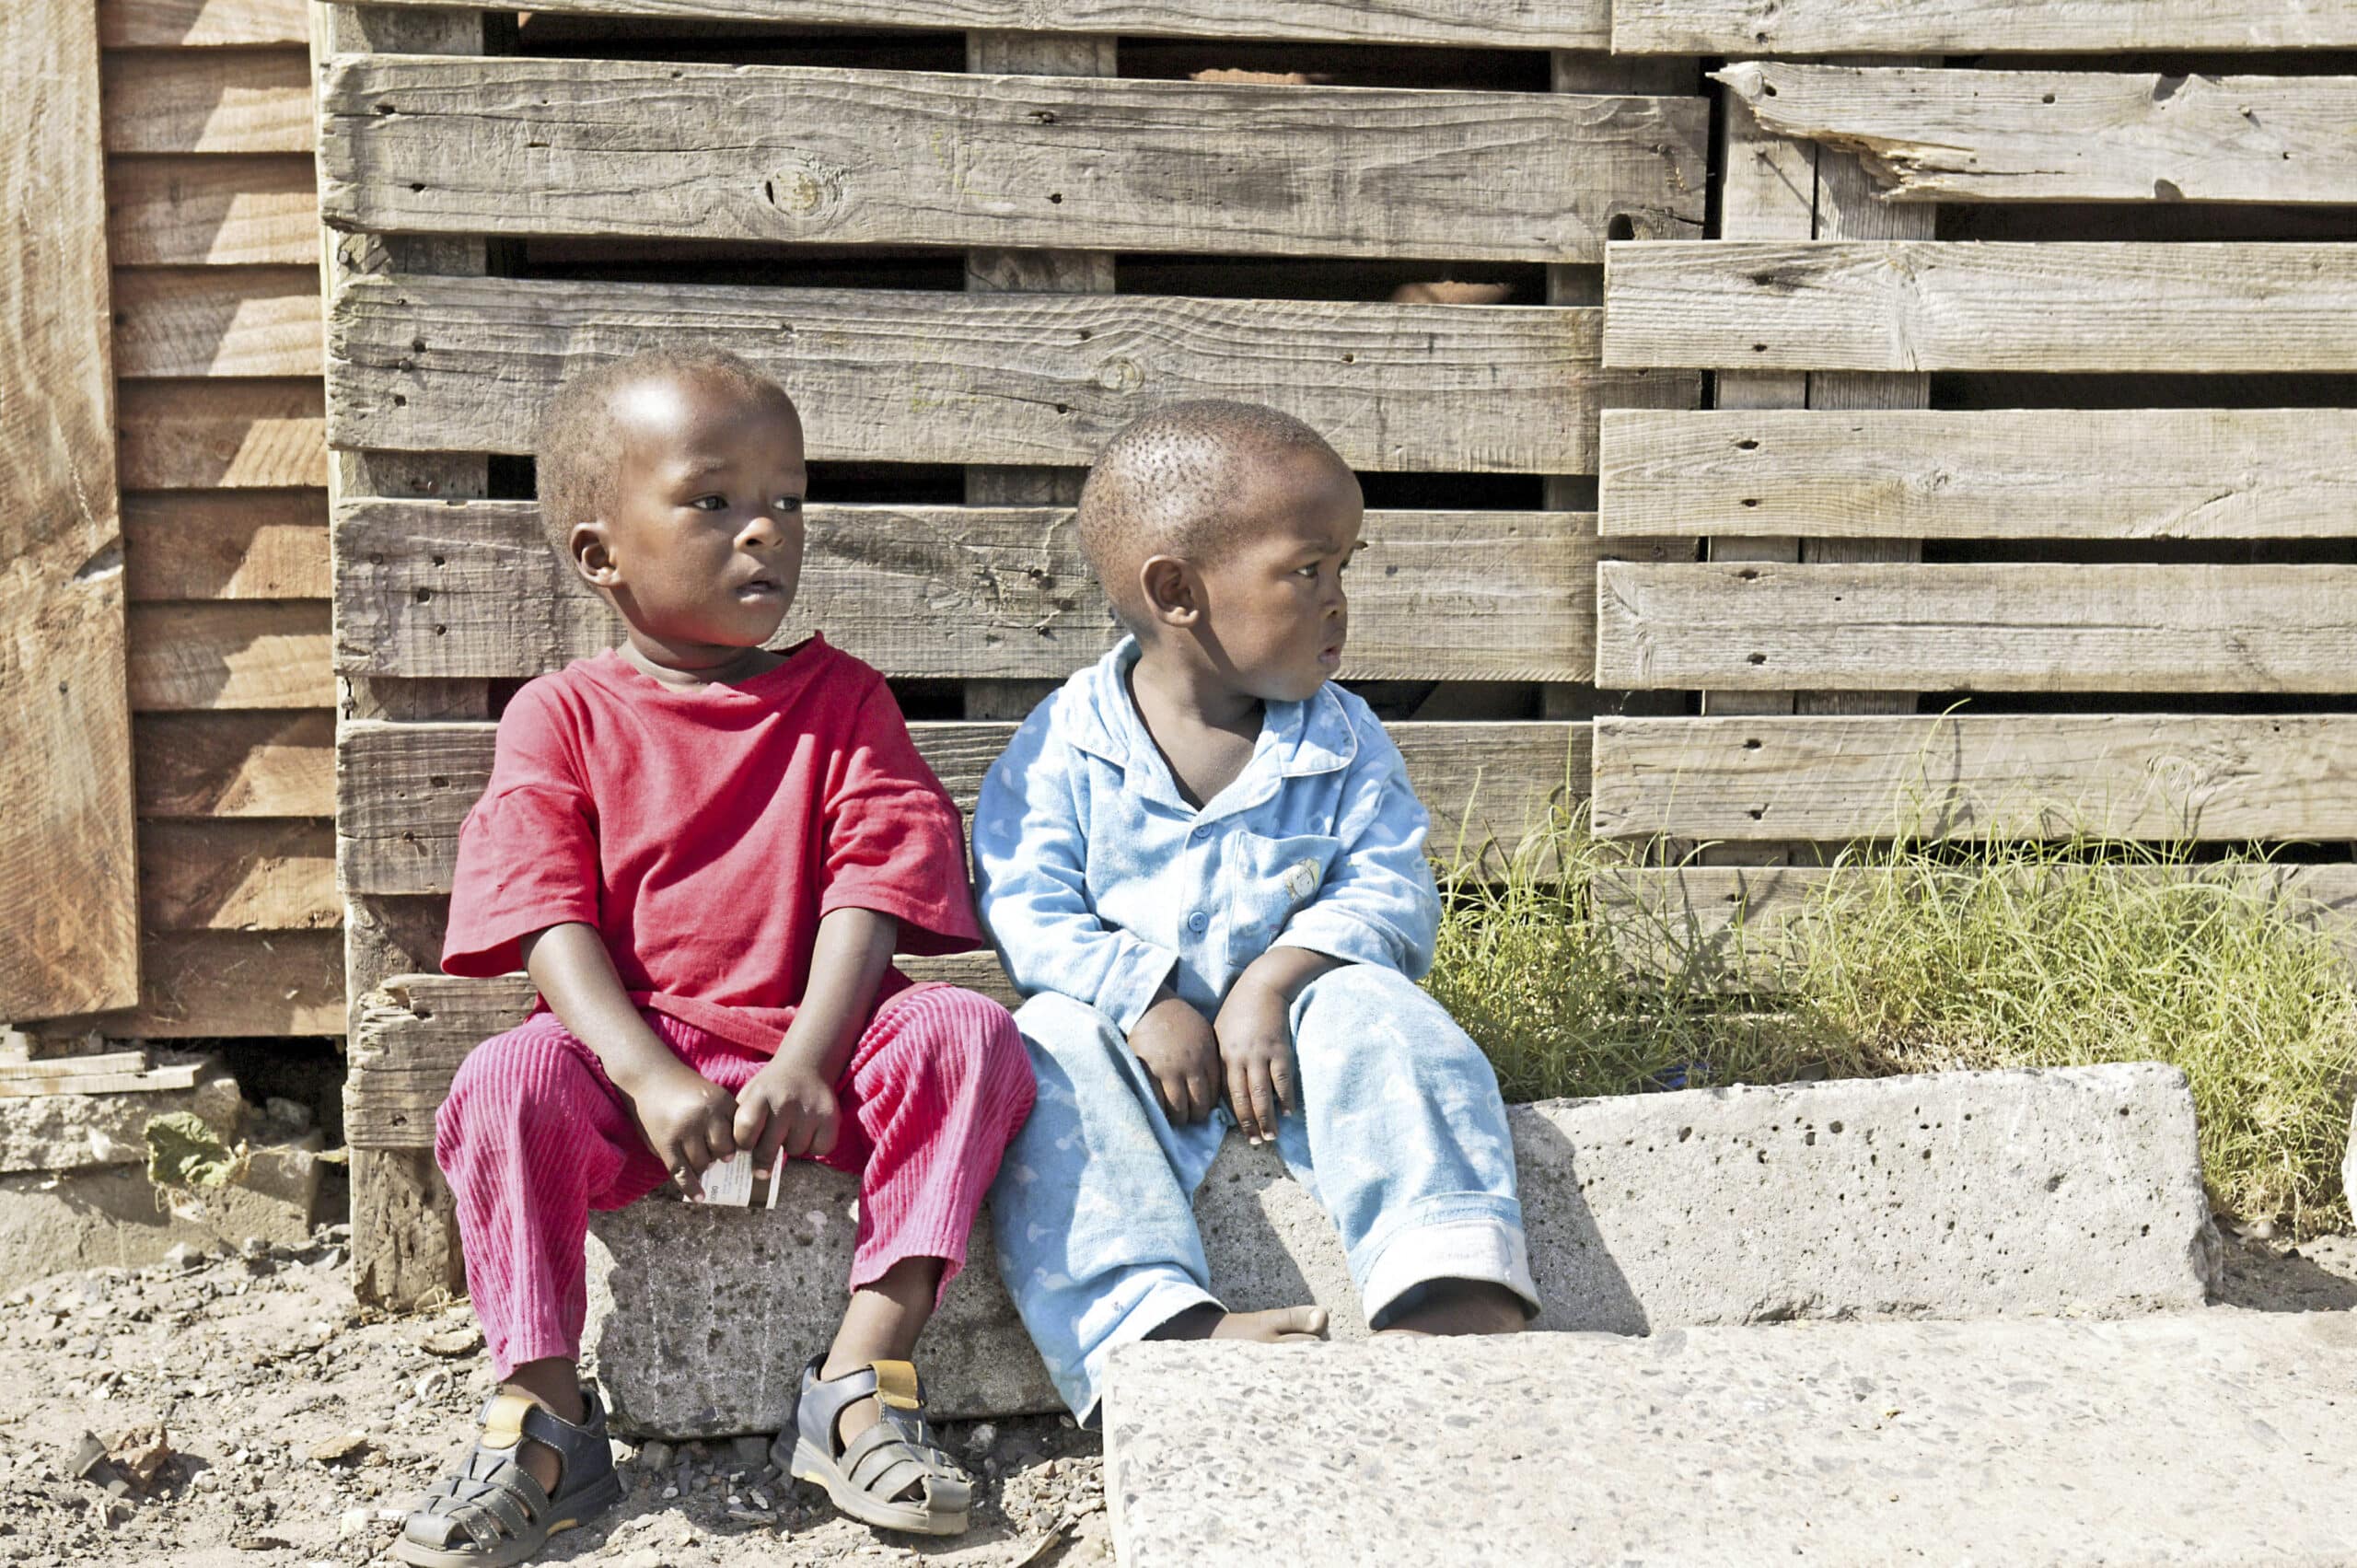 Zwei kleine Kinder, eines im roten Hemd und eines im blauen Outfit, sitzen nebeneinander auf einem Betonblock neben einer Wand aus Holzpaletten in einer sonnigen Umgebung im Freien. © Fotografie Tomas Rodriguez